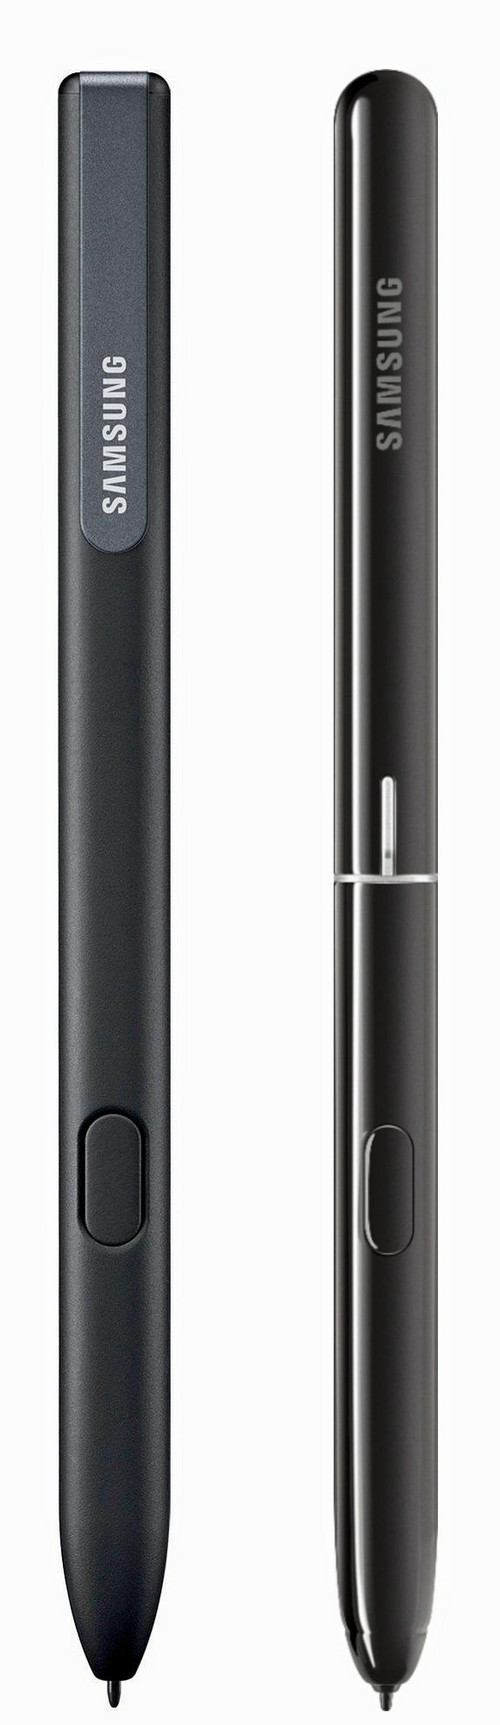 Links: Der Galaxy Tab S3-Pen. Rechts: Der neue Stift zum Galaxy Tab S4.